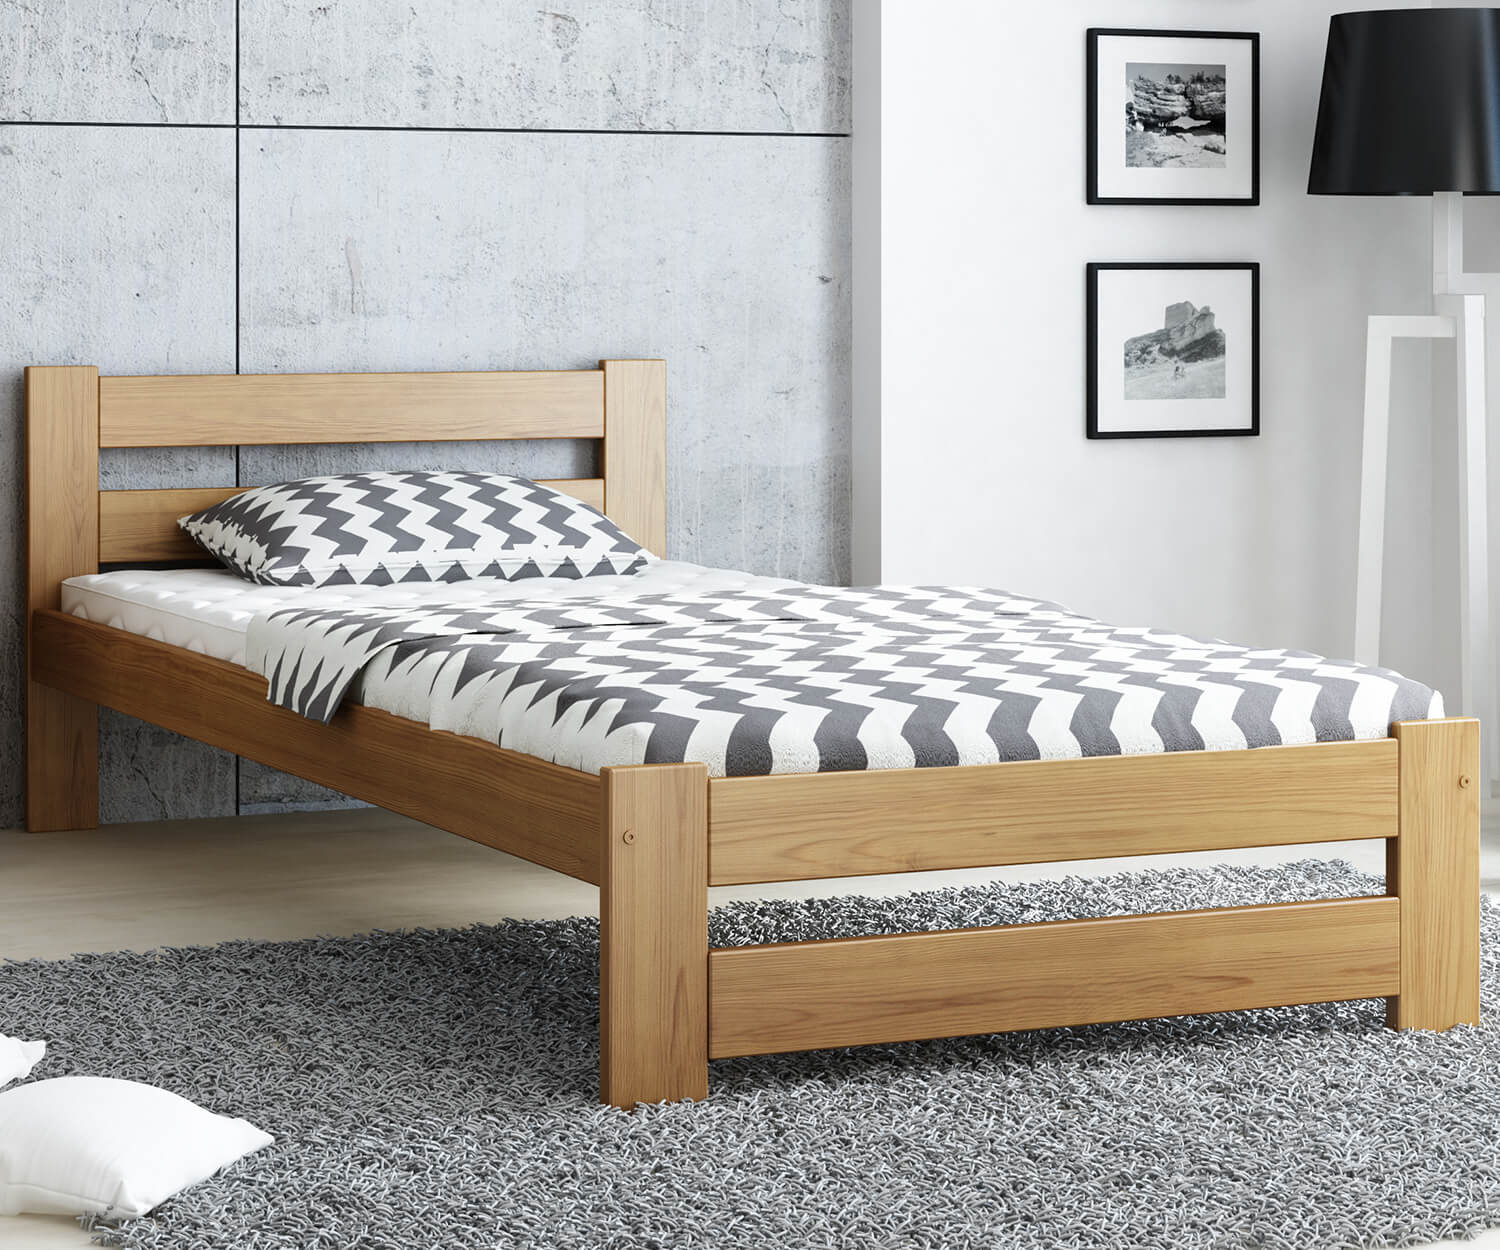 Giường ngủ gỗ công nghiệp màu vân gỗ sáng đẹp, sang trọng với thiết kế nhỏ gọn cho 1 người nằm